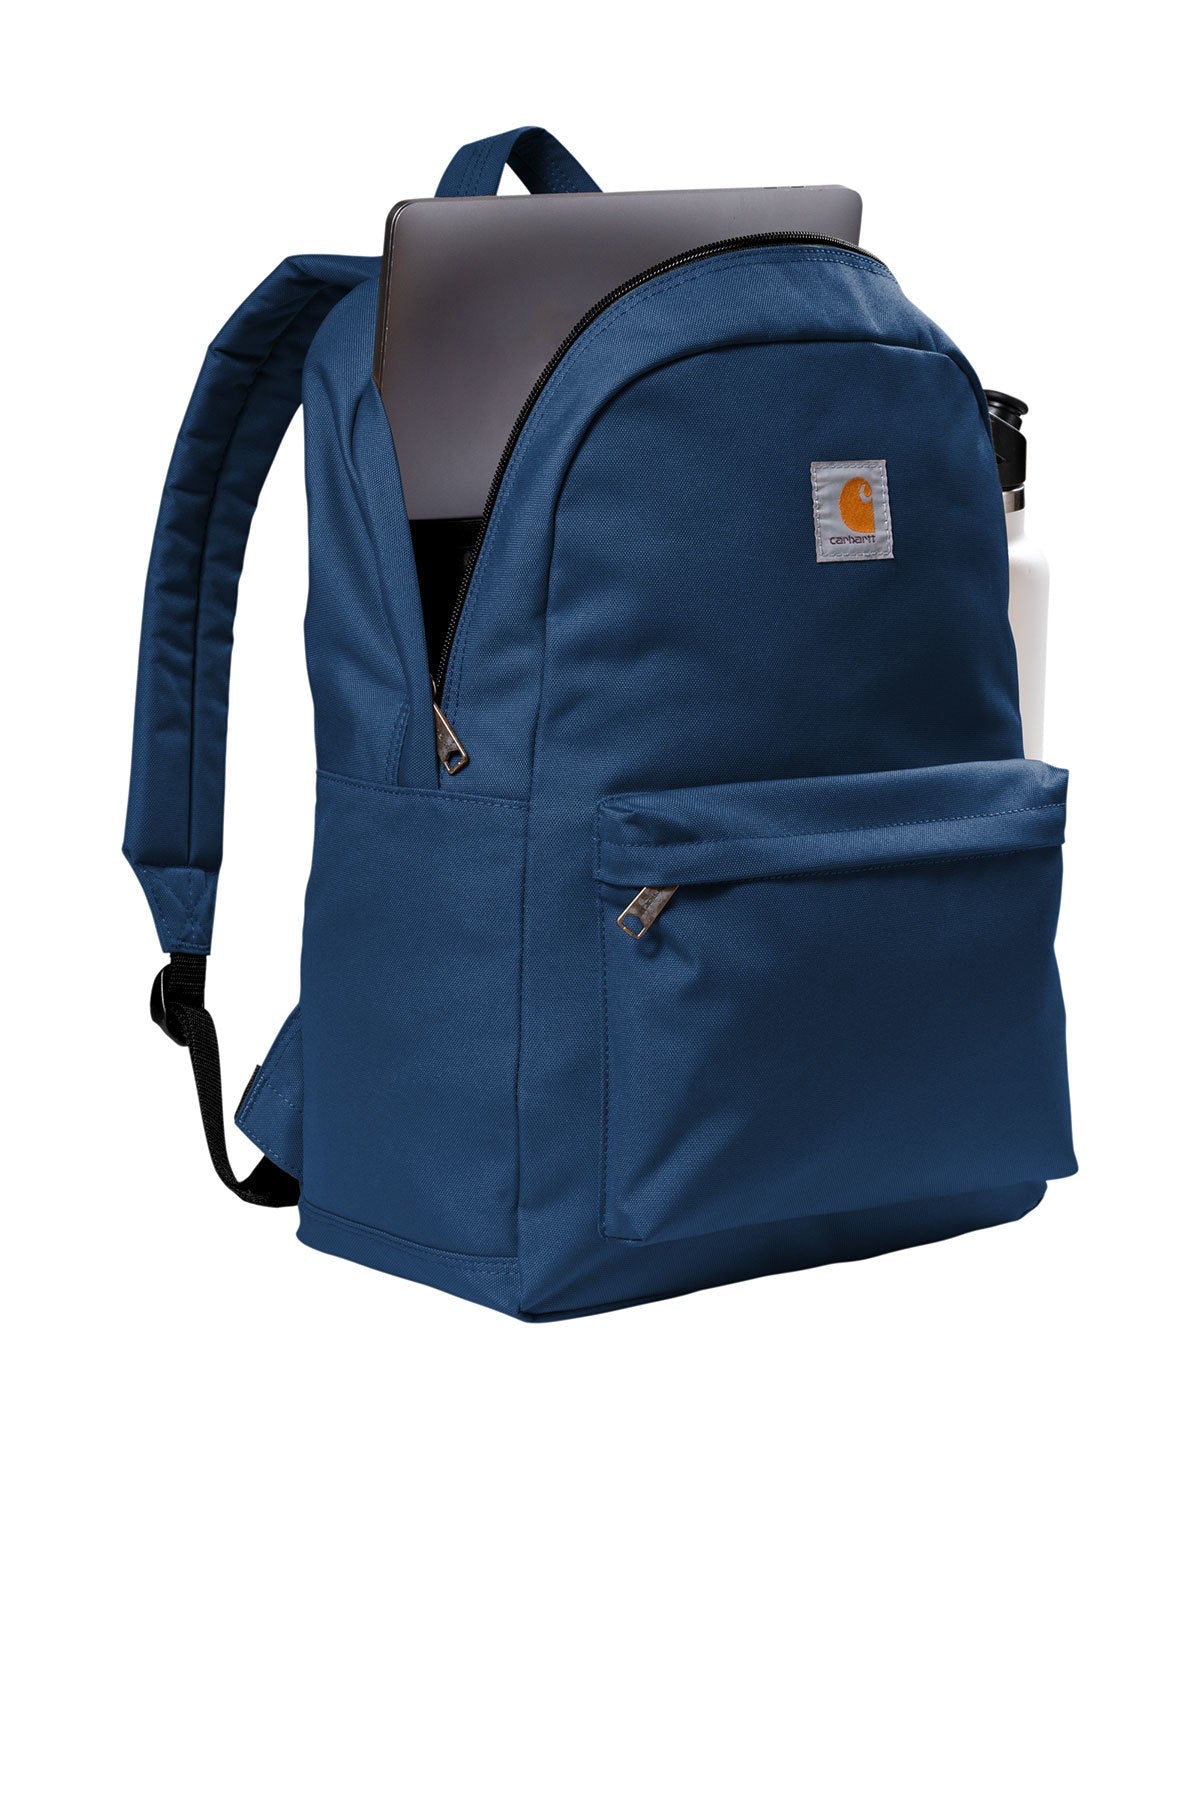 Backpacks - BT Imprintables Shirts